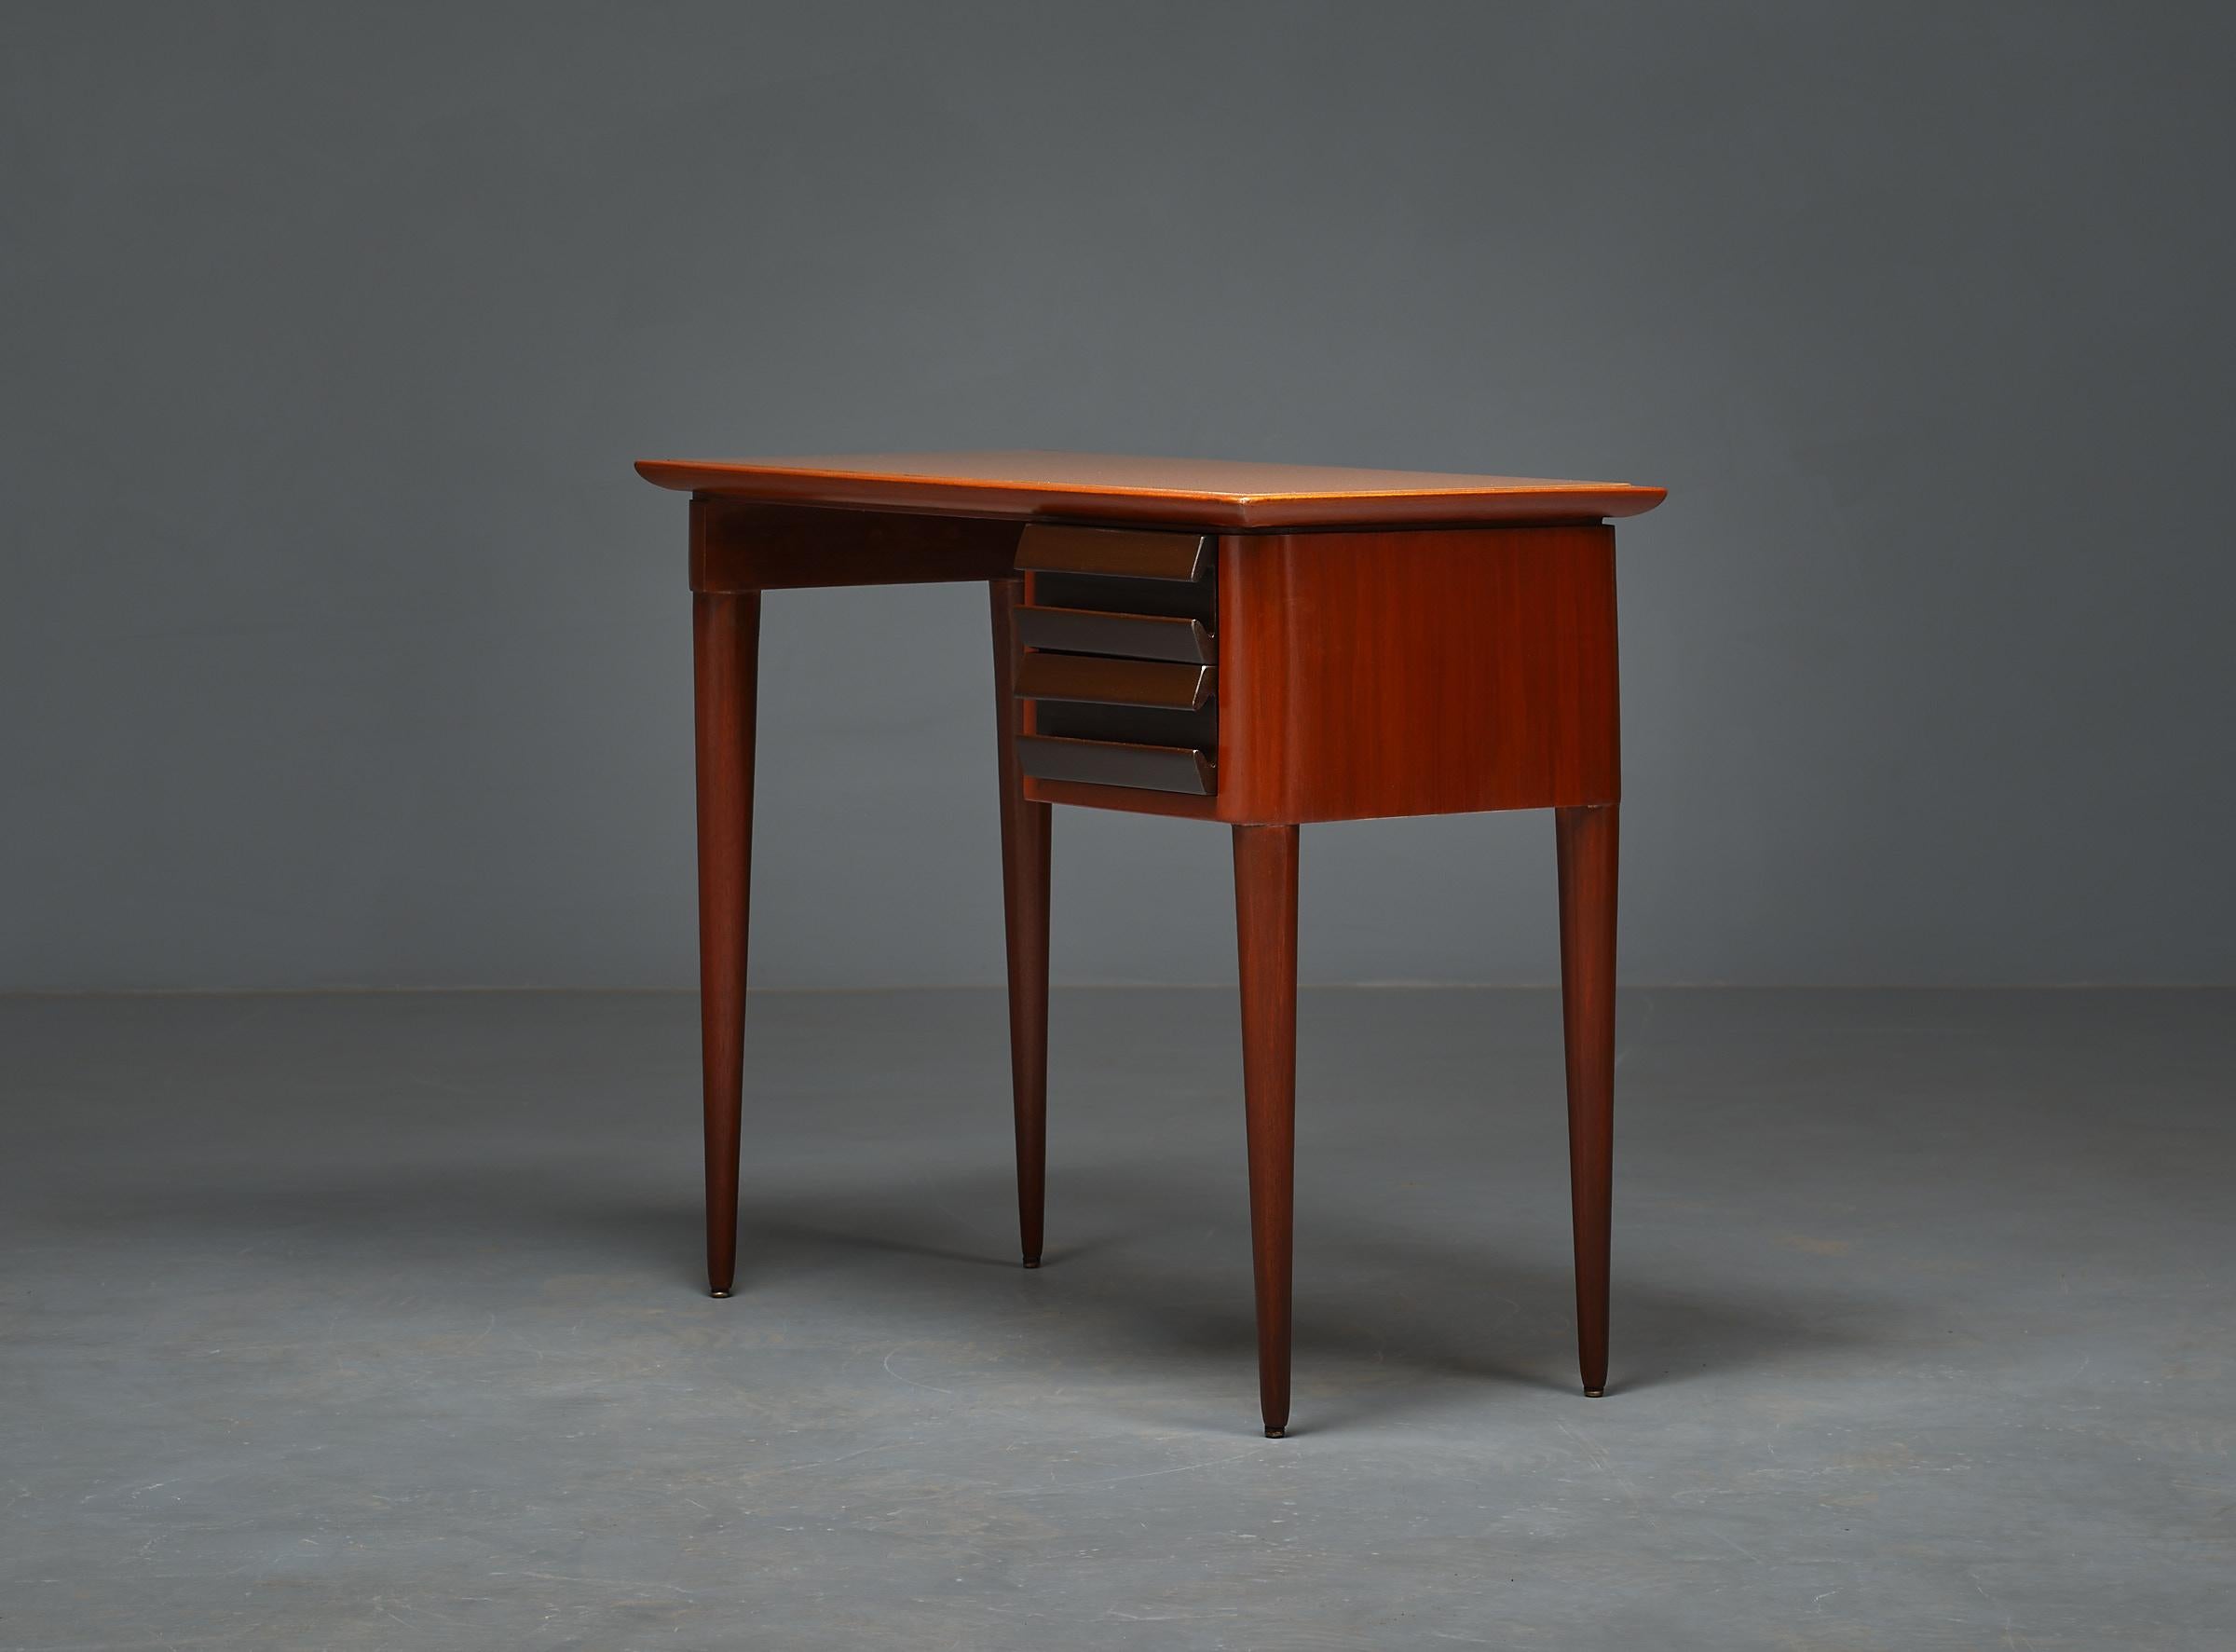 Mid-Century Modern 1950s Italian Design Desk by Vittorio Dassi - Exquisite, Elegant, and Restored